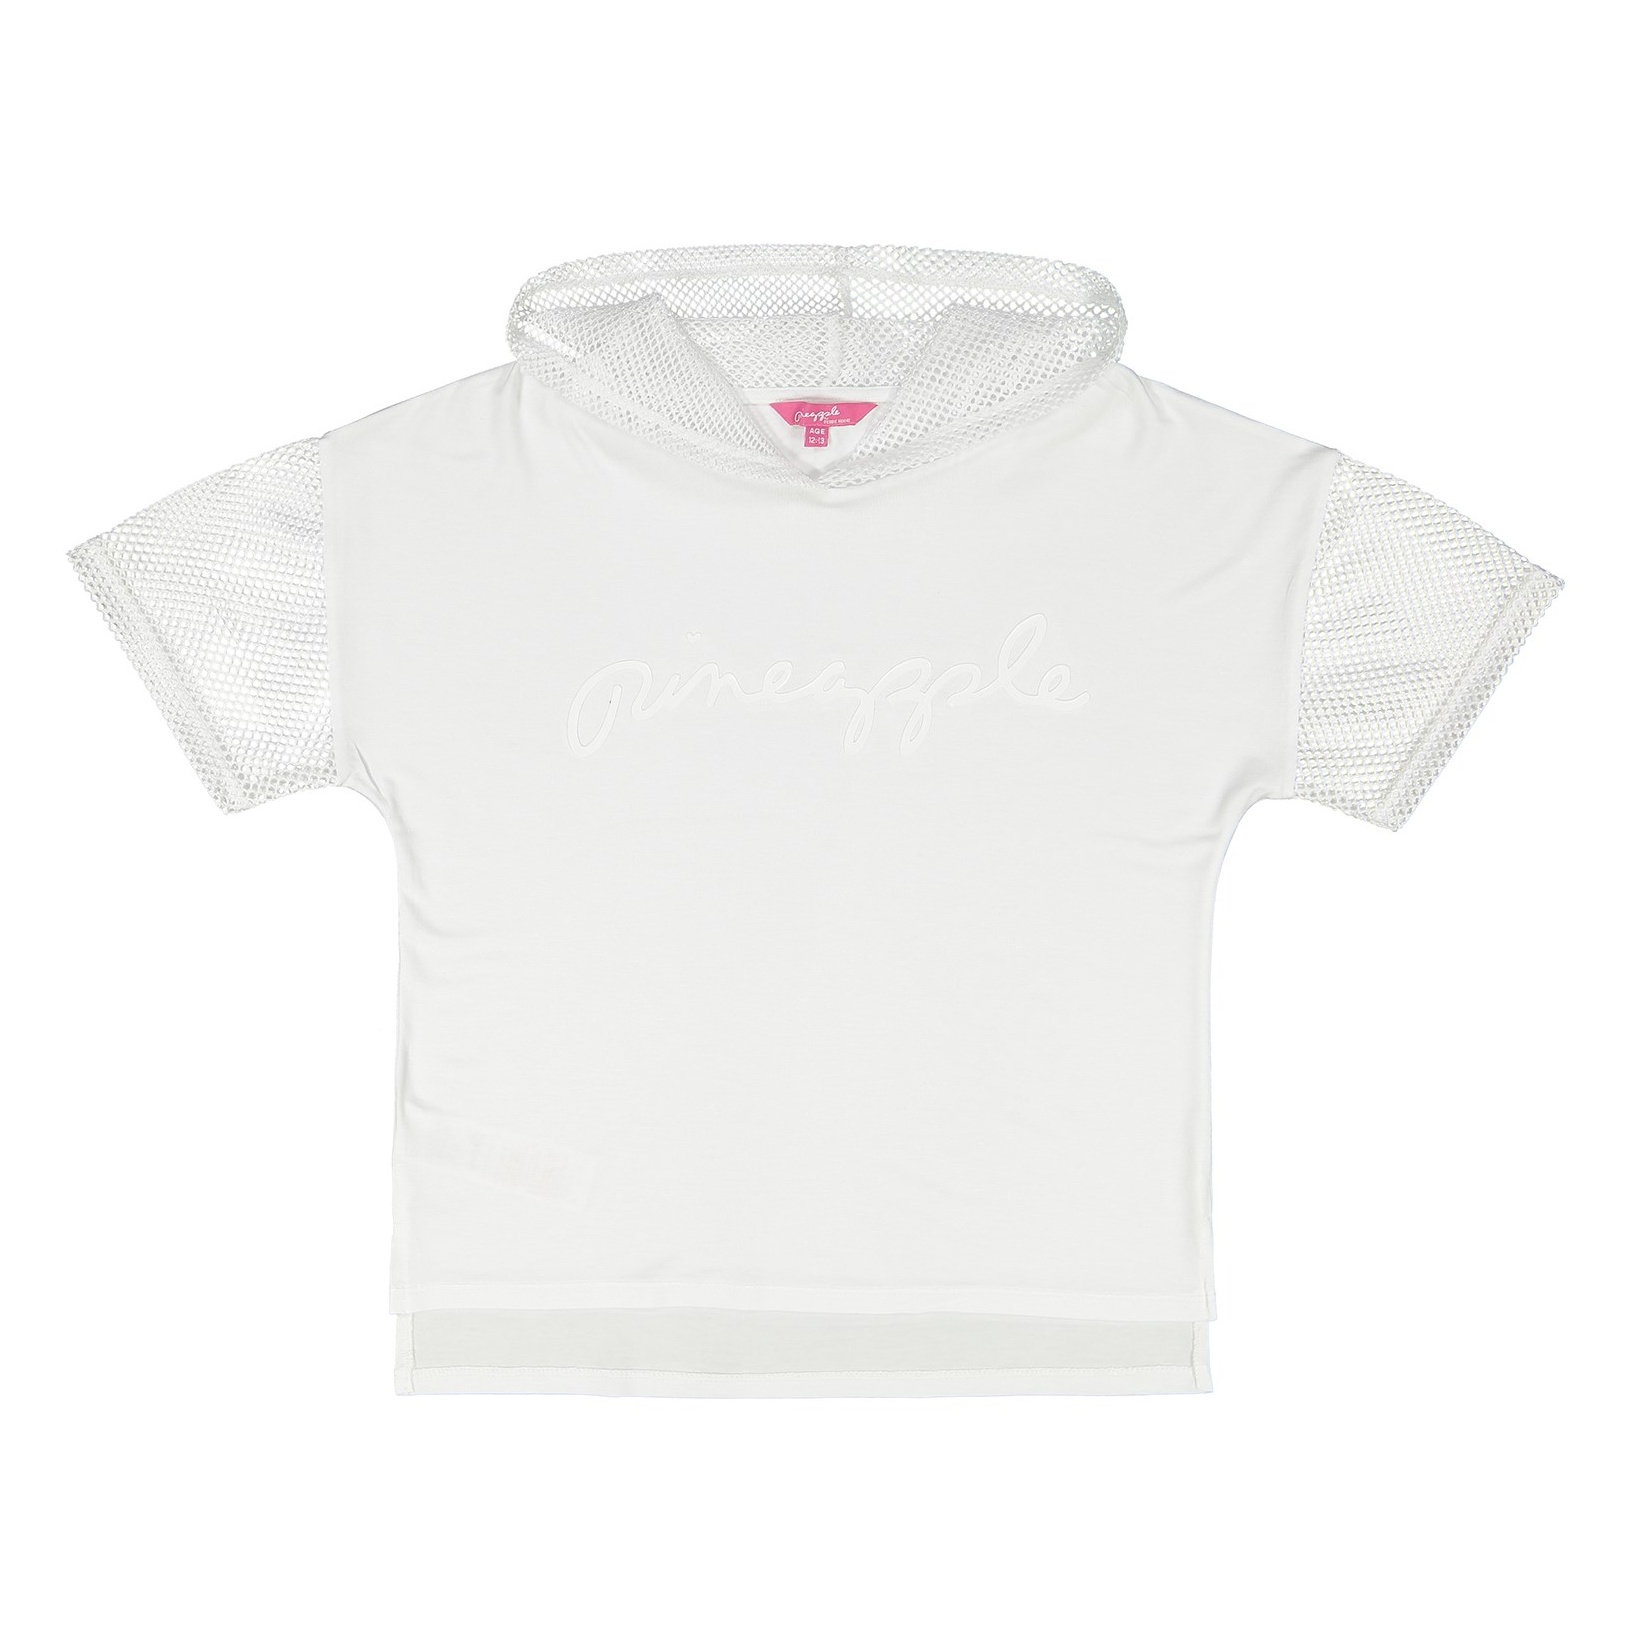 تی شرت ویسکوز یقه گرد دخترانه - دبنهامز